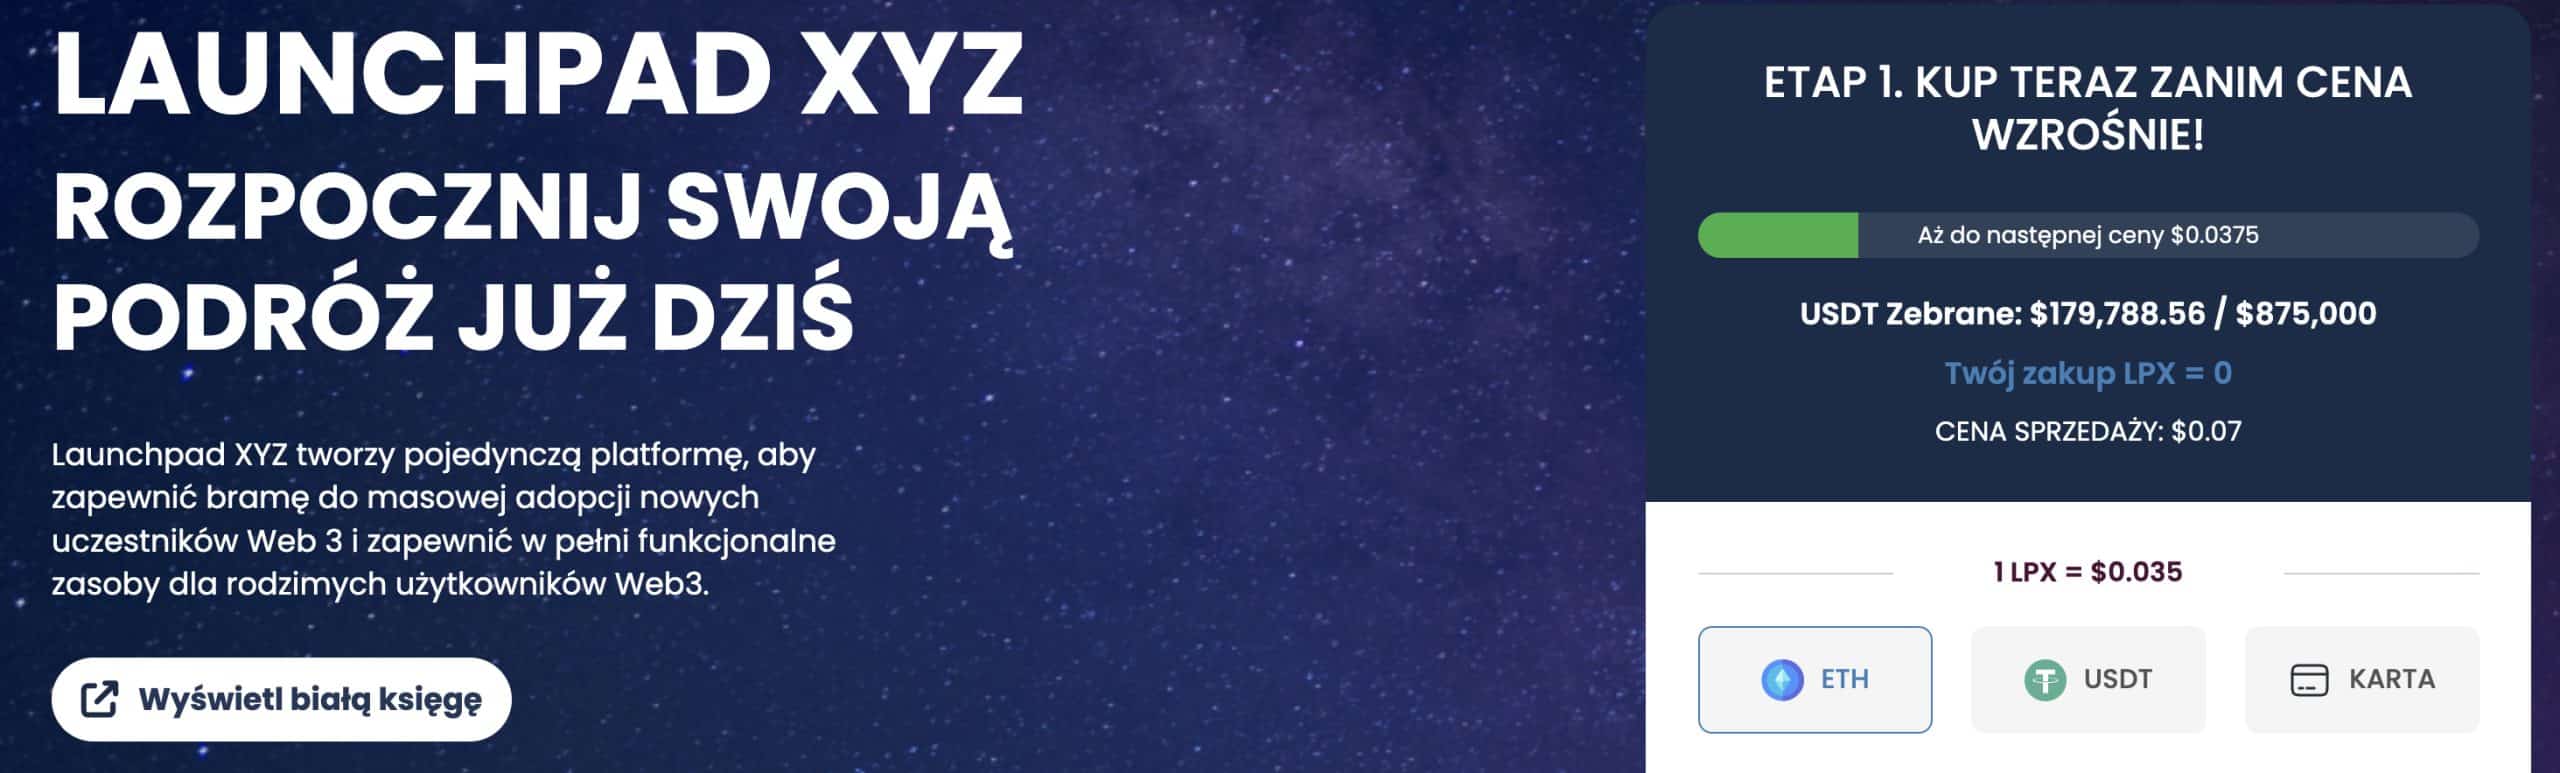 Launchpad XYZ main page